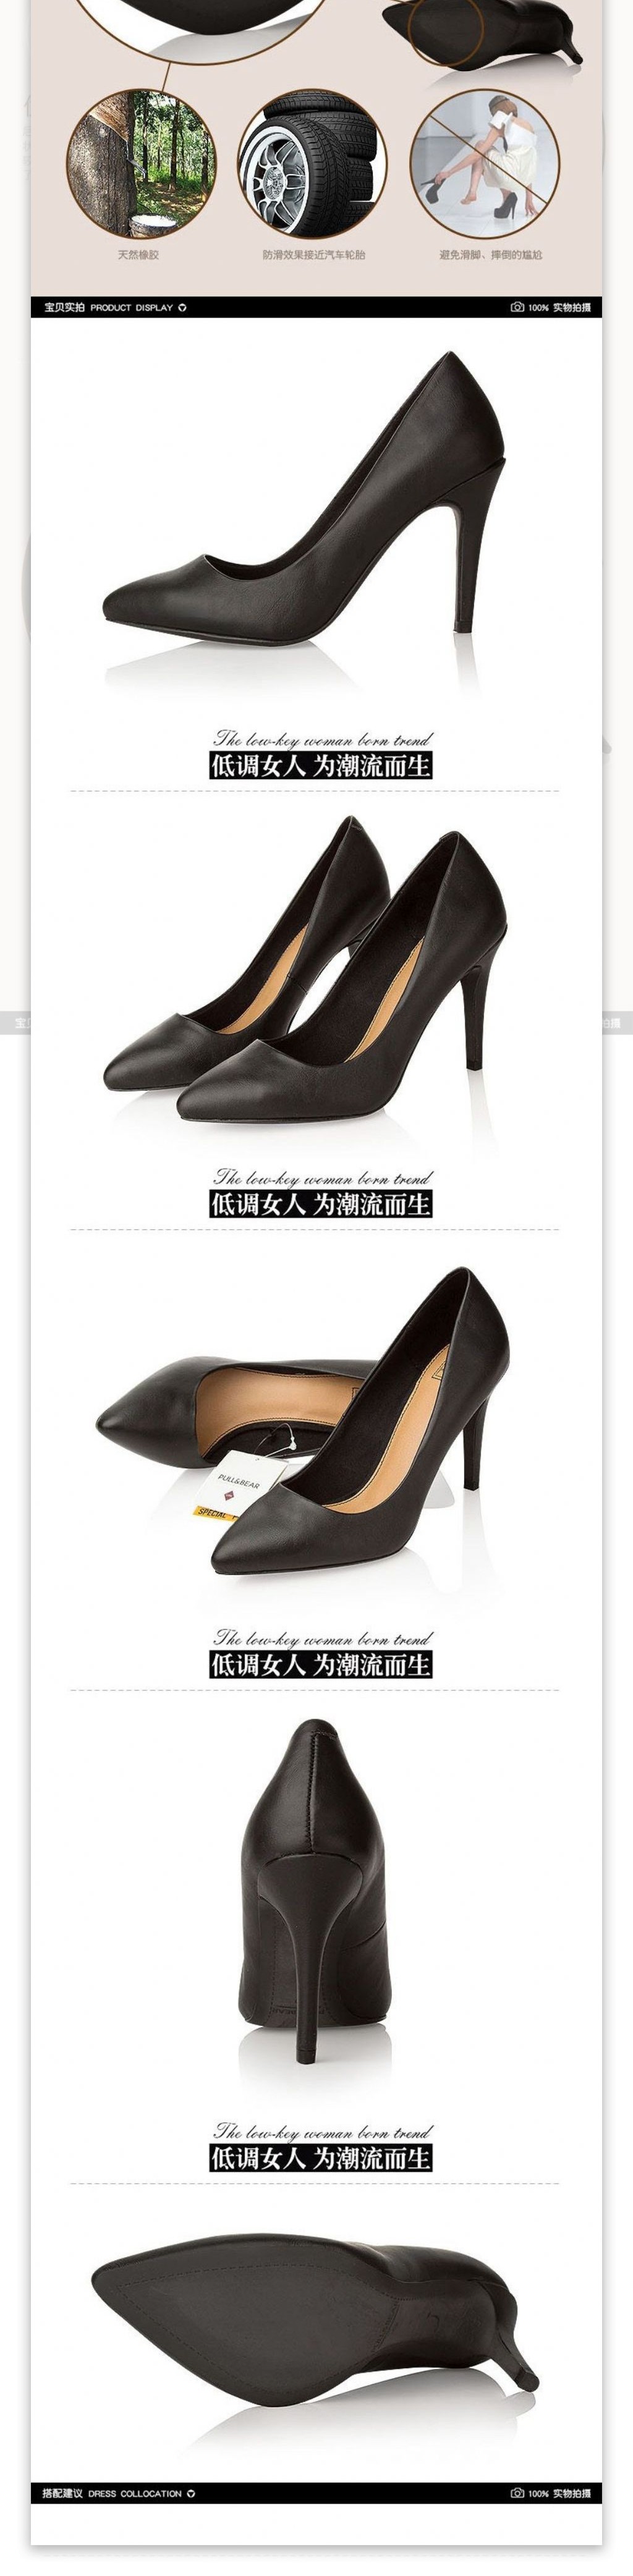 淘宝女鞋类宝贝详情页产品页时尚黑色高跟鞋